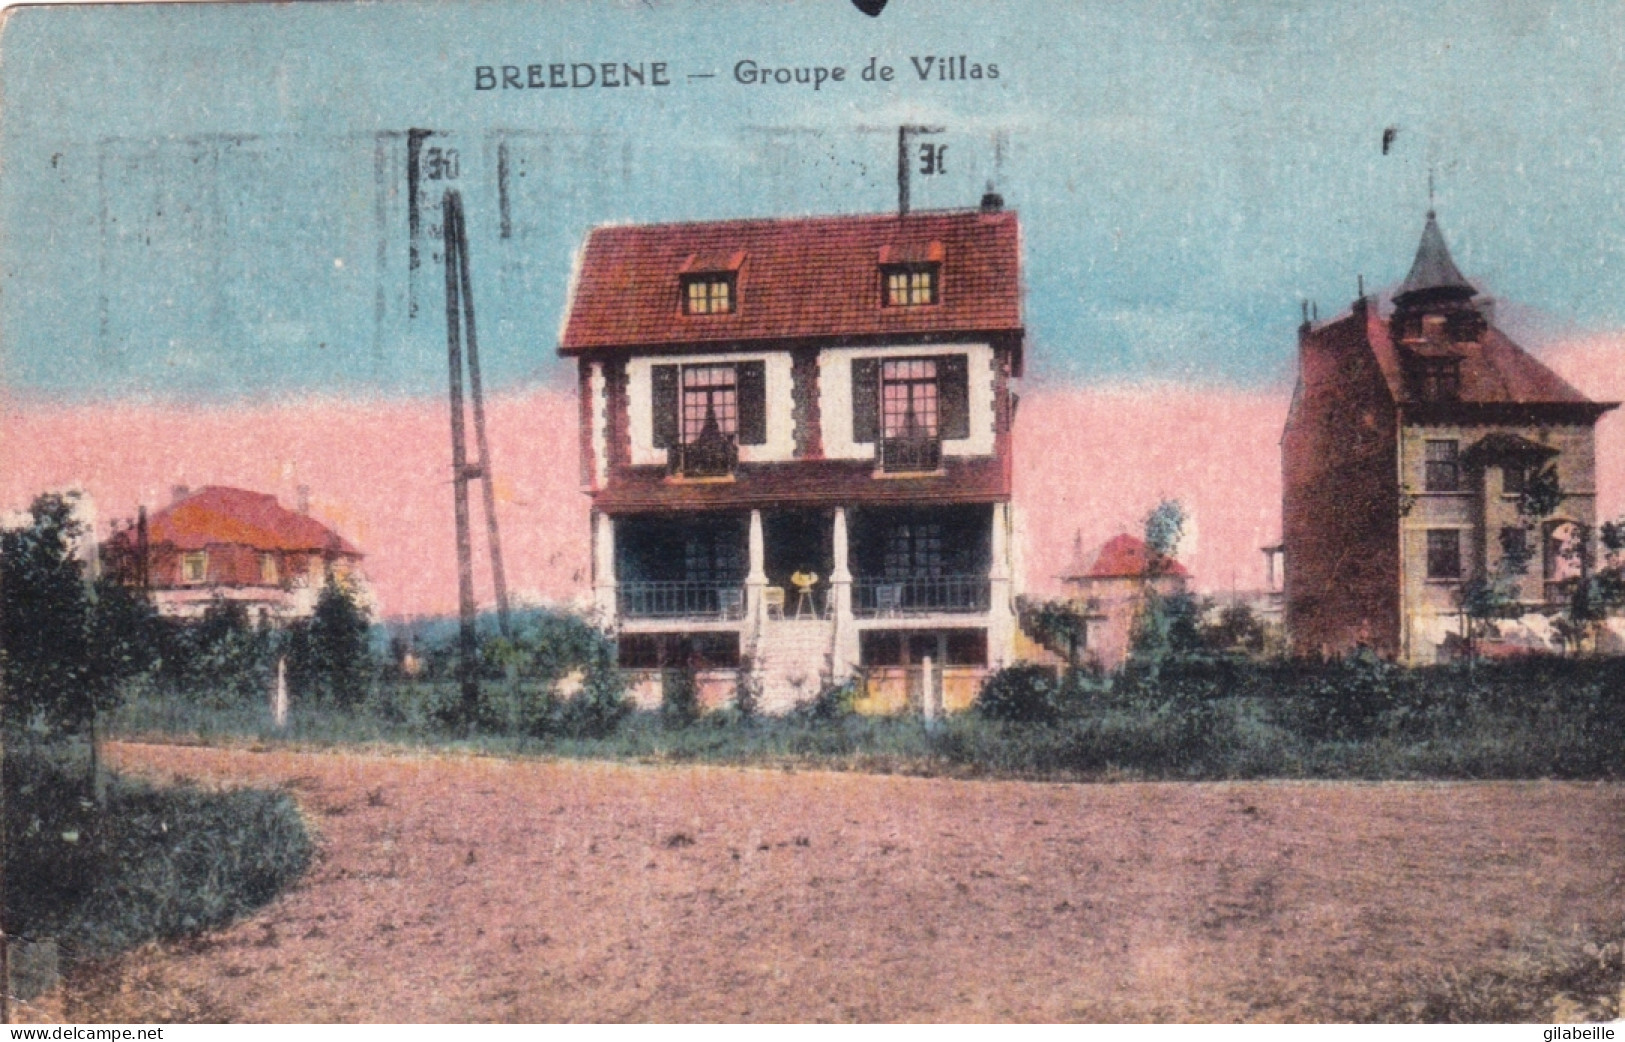 BREDENE - BREEDENE - Groupe De Villas - Bredene